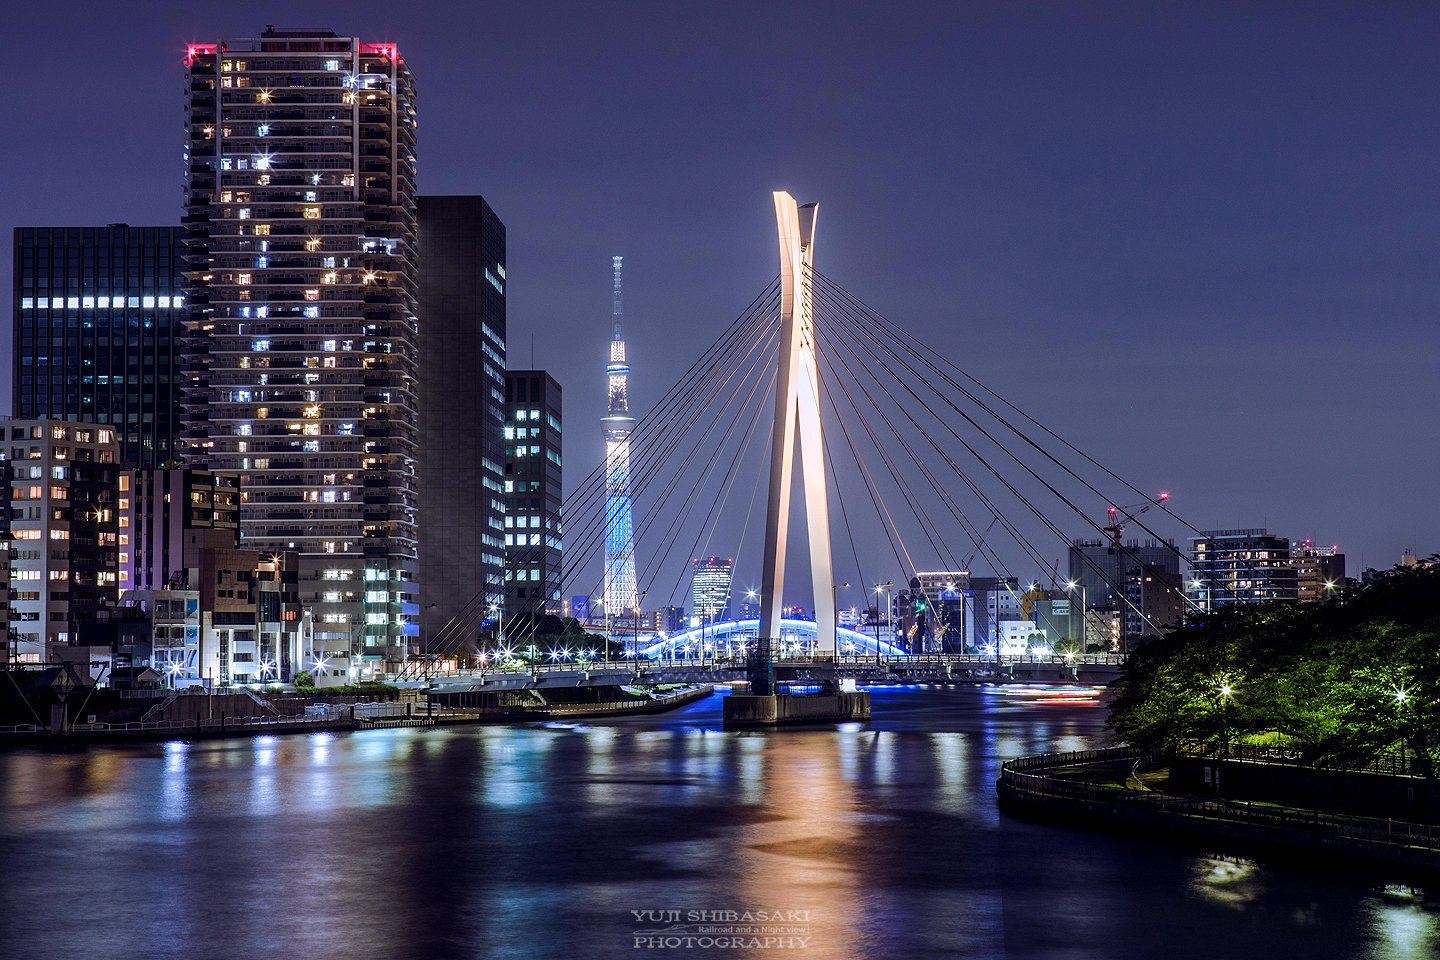 Yuji Shibasaki Photo 中央大橋とスカイツリー 久しぶりに隅田川に来ました 思えば都内夜景の原点は 隅田川の橋のライトアップ 最後はなんだかマンション広告の写真みたいになってしまった T Co Al4zbvvg97 Twitter